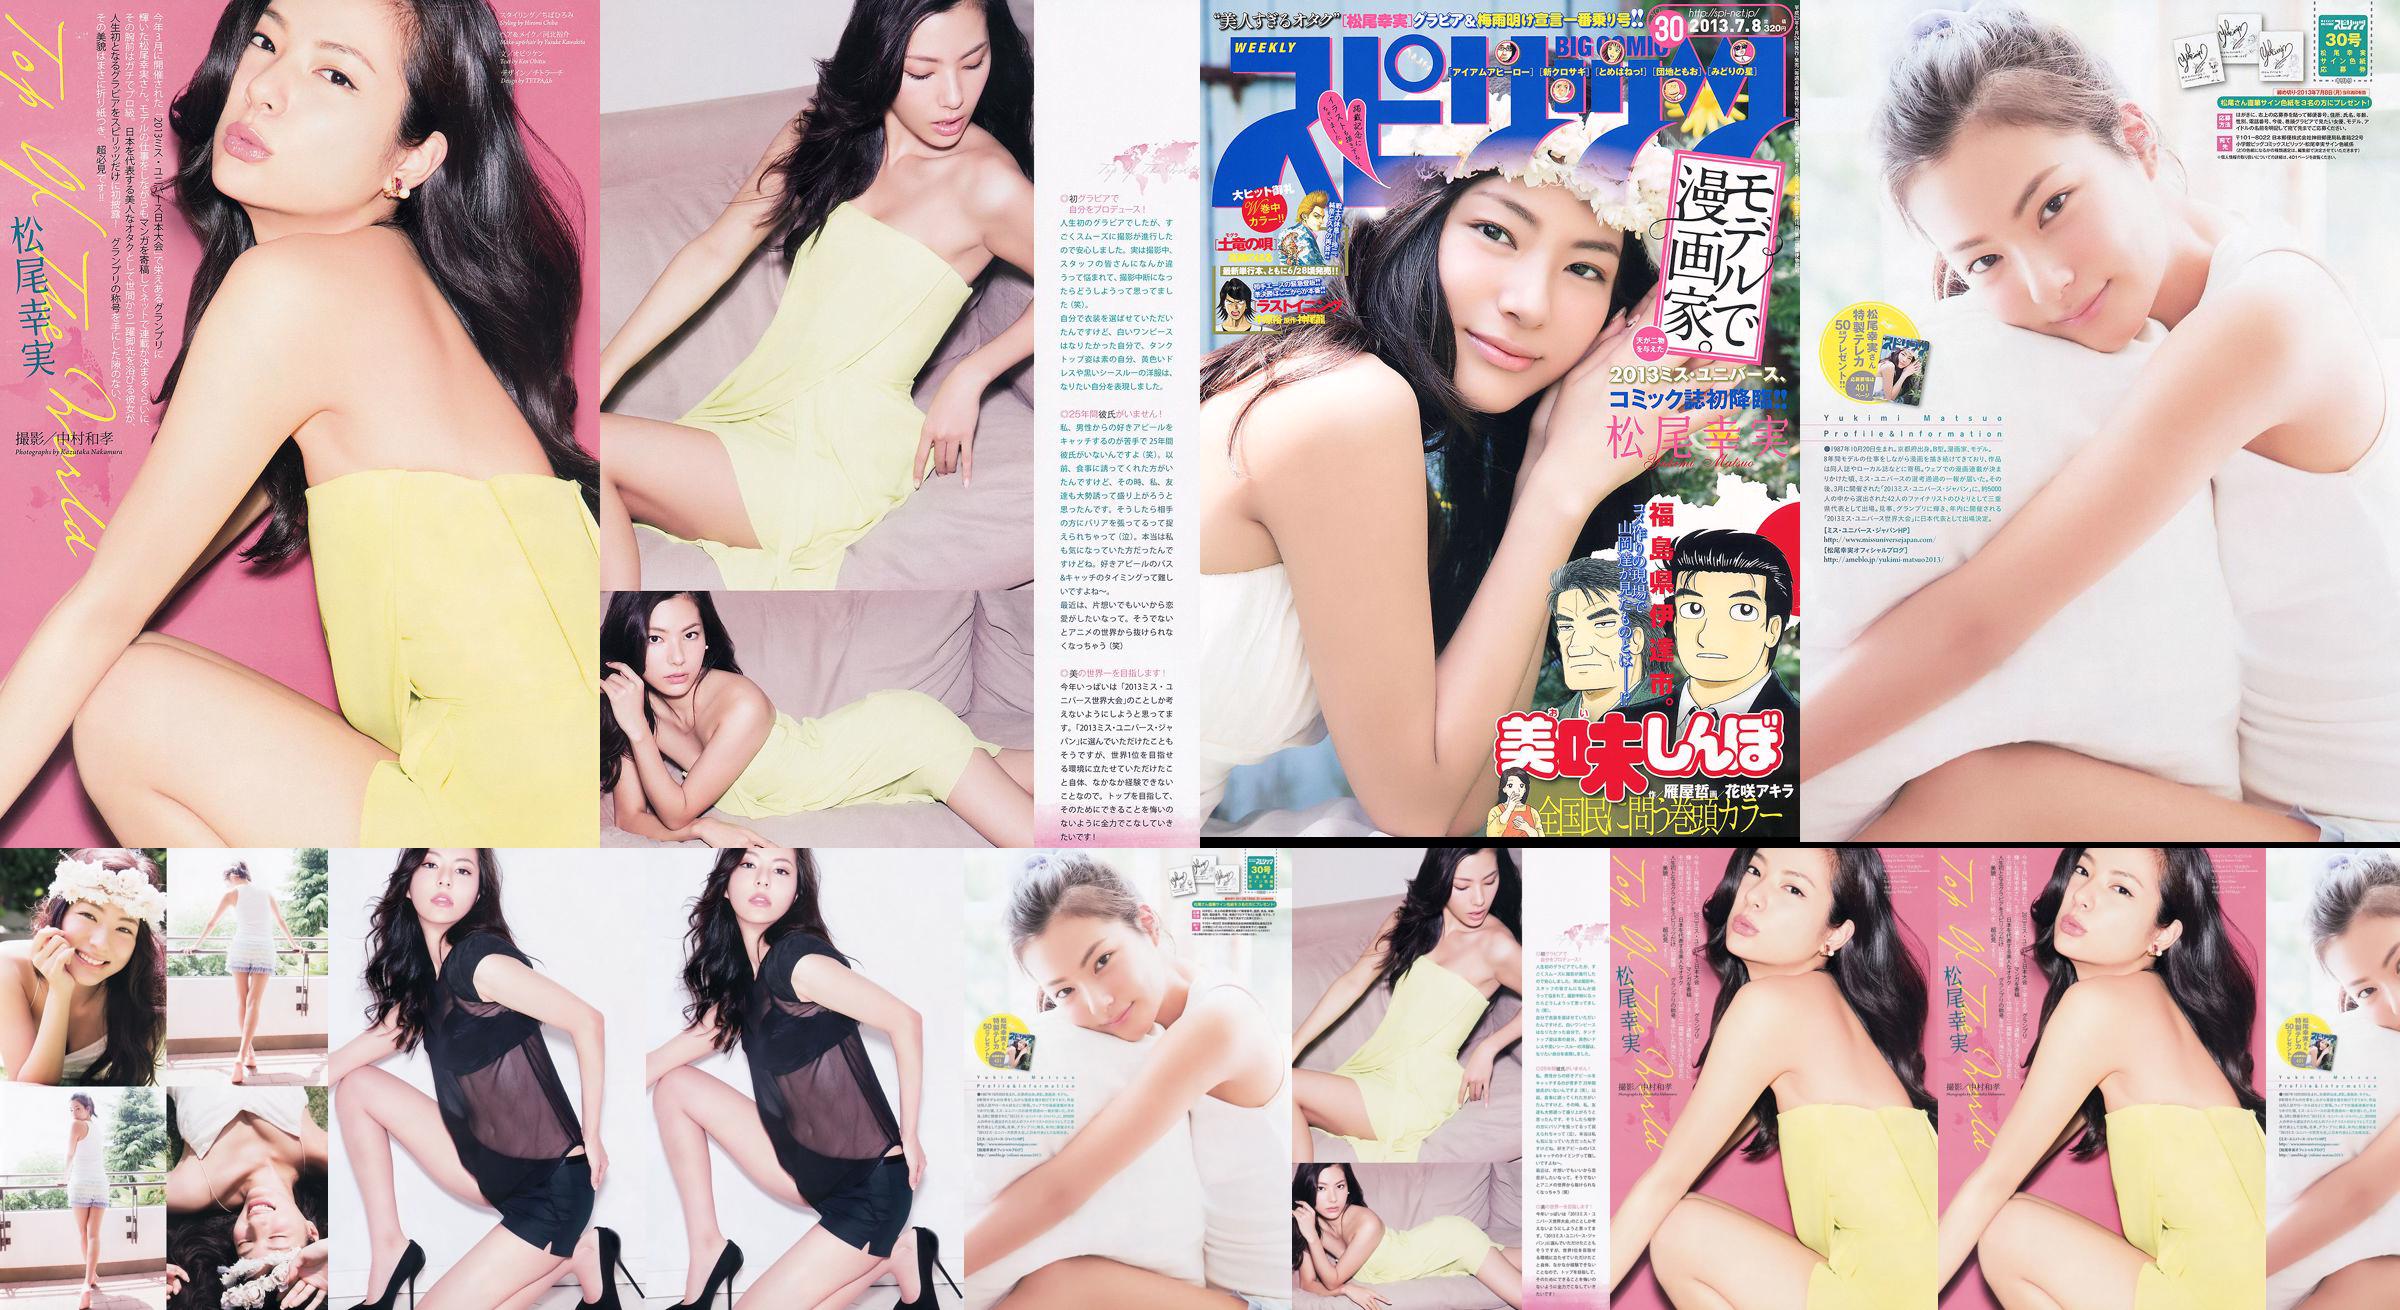 [Weekly Big Comic Spirits] Komi Matsuo 2013 No.30 Photo Magazine No.700a10 Page 2